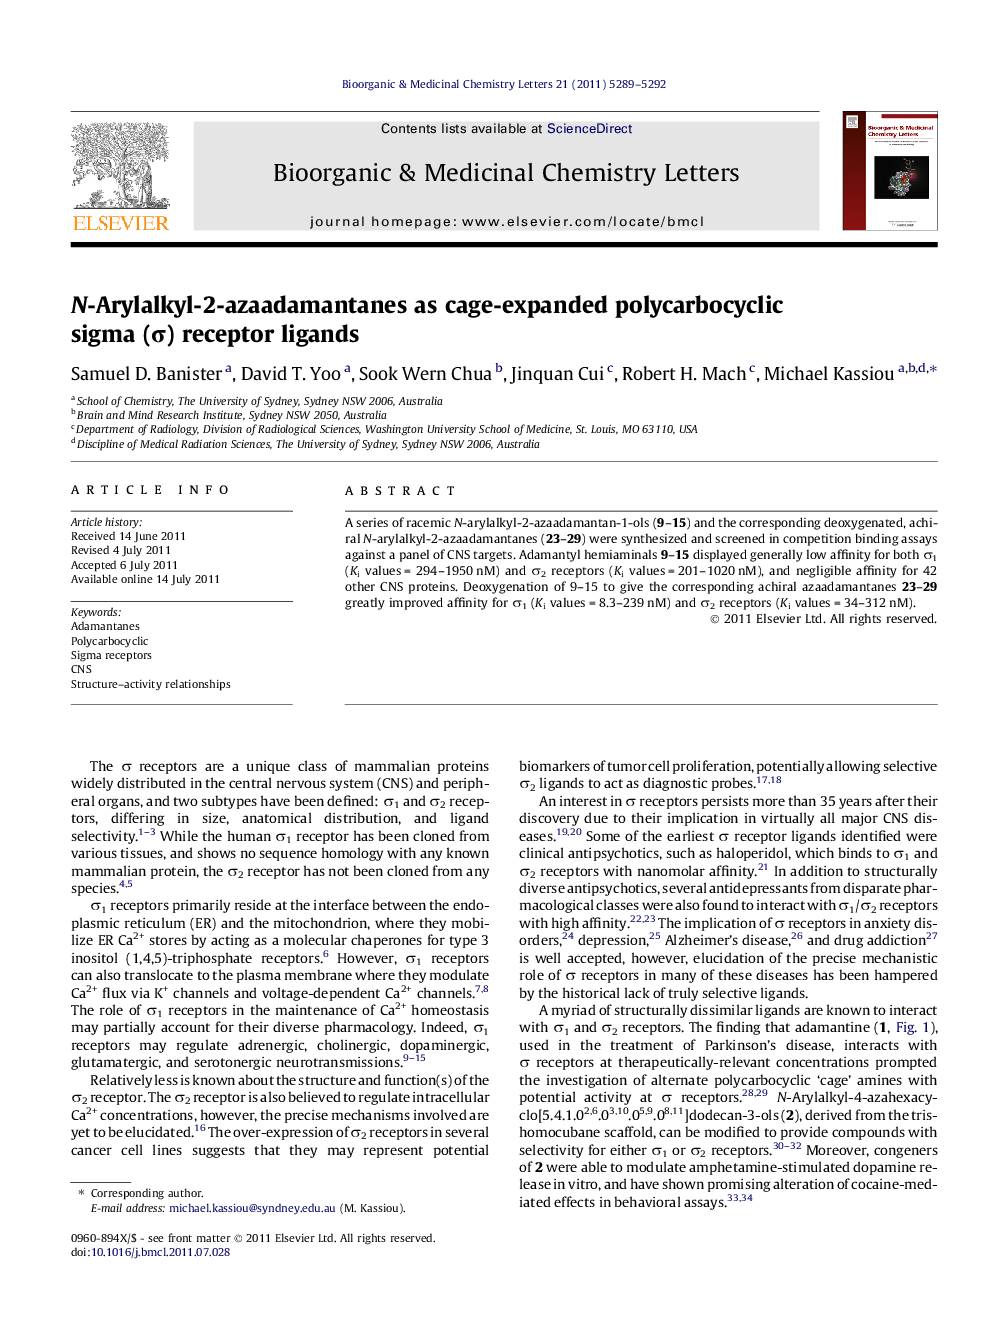 N-Arylalkyl-2-azaadamantanes as cage-expanded polycarbocyclic sigma (Ï) receptor ligands